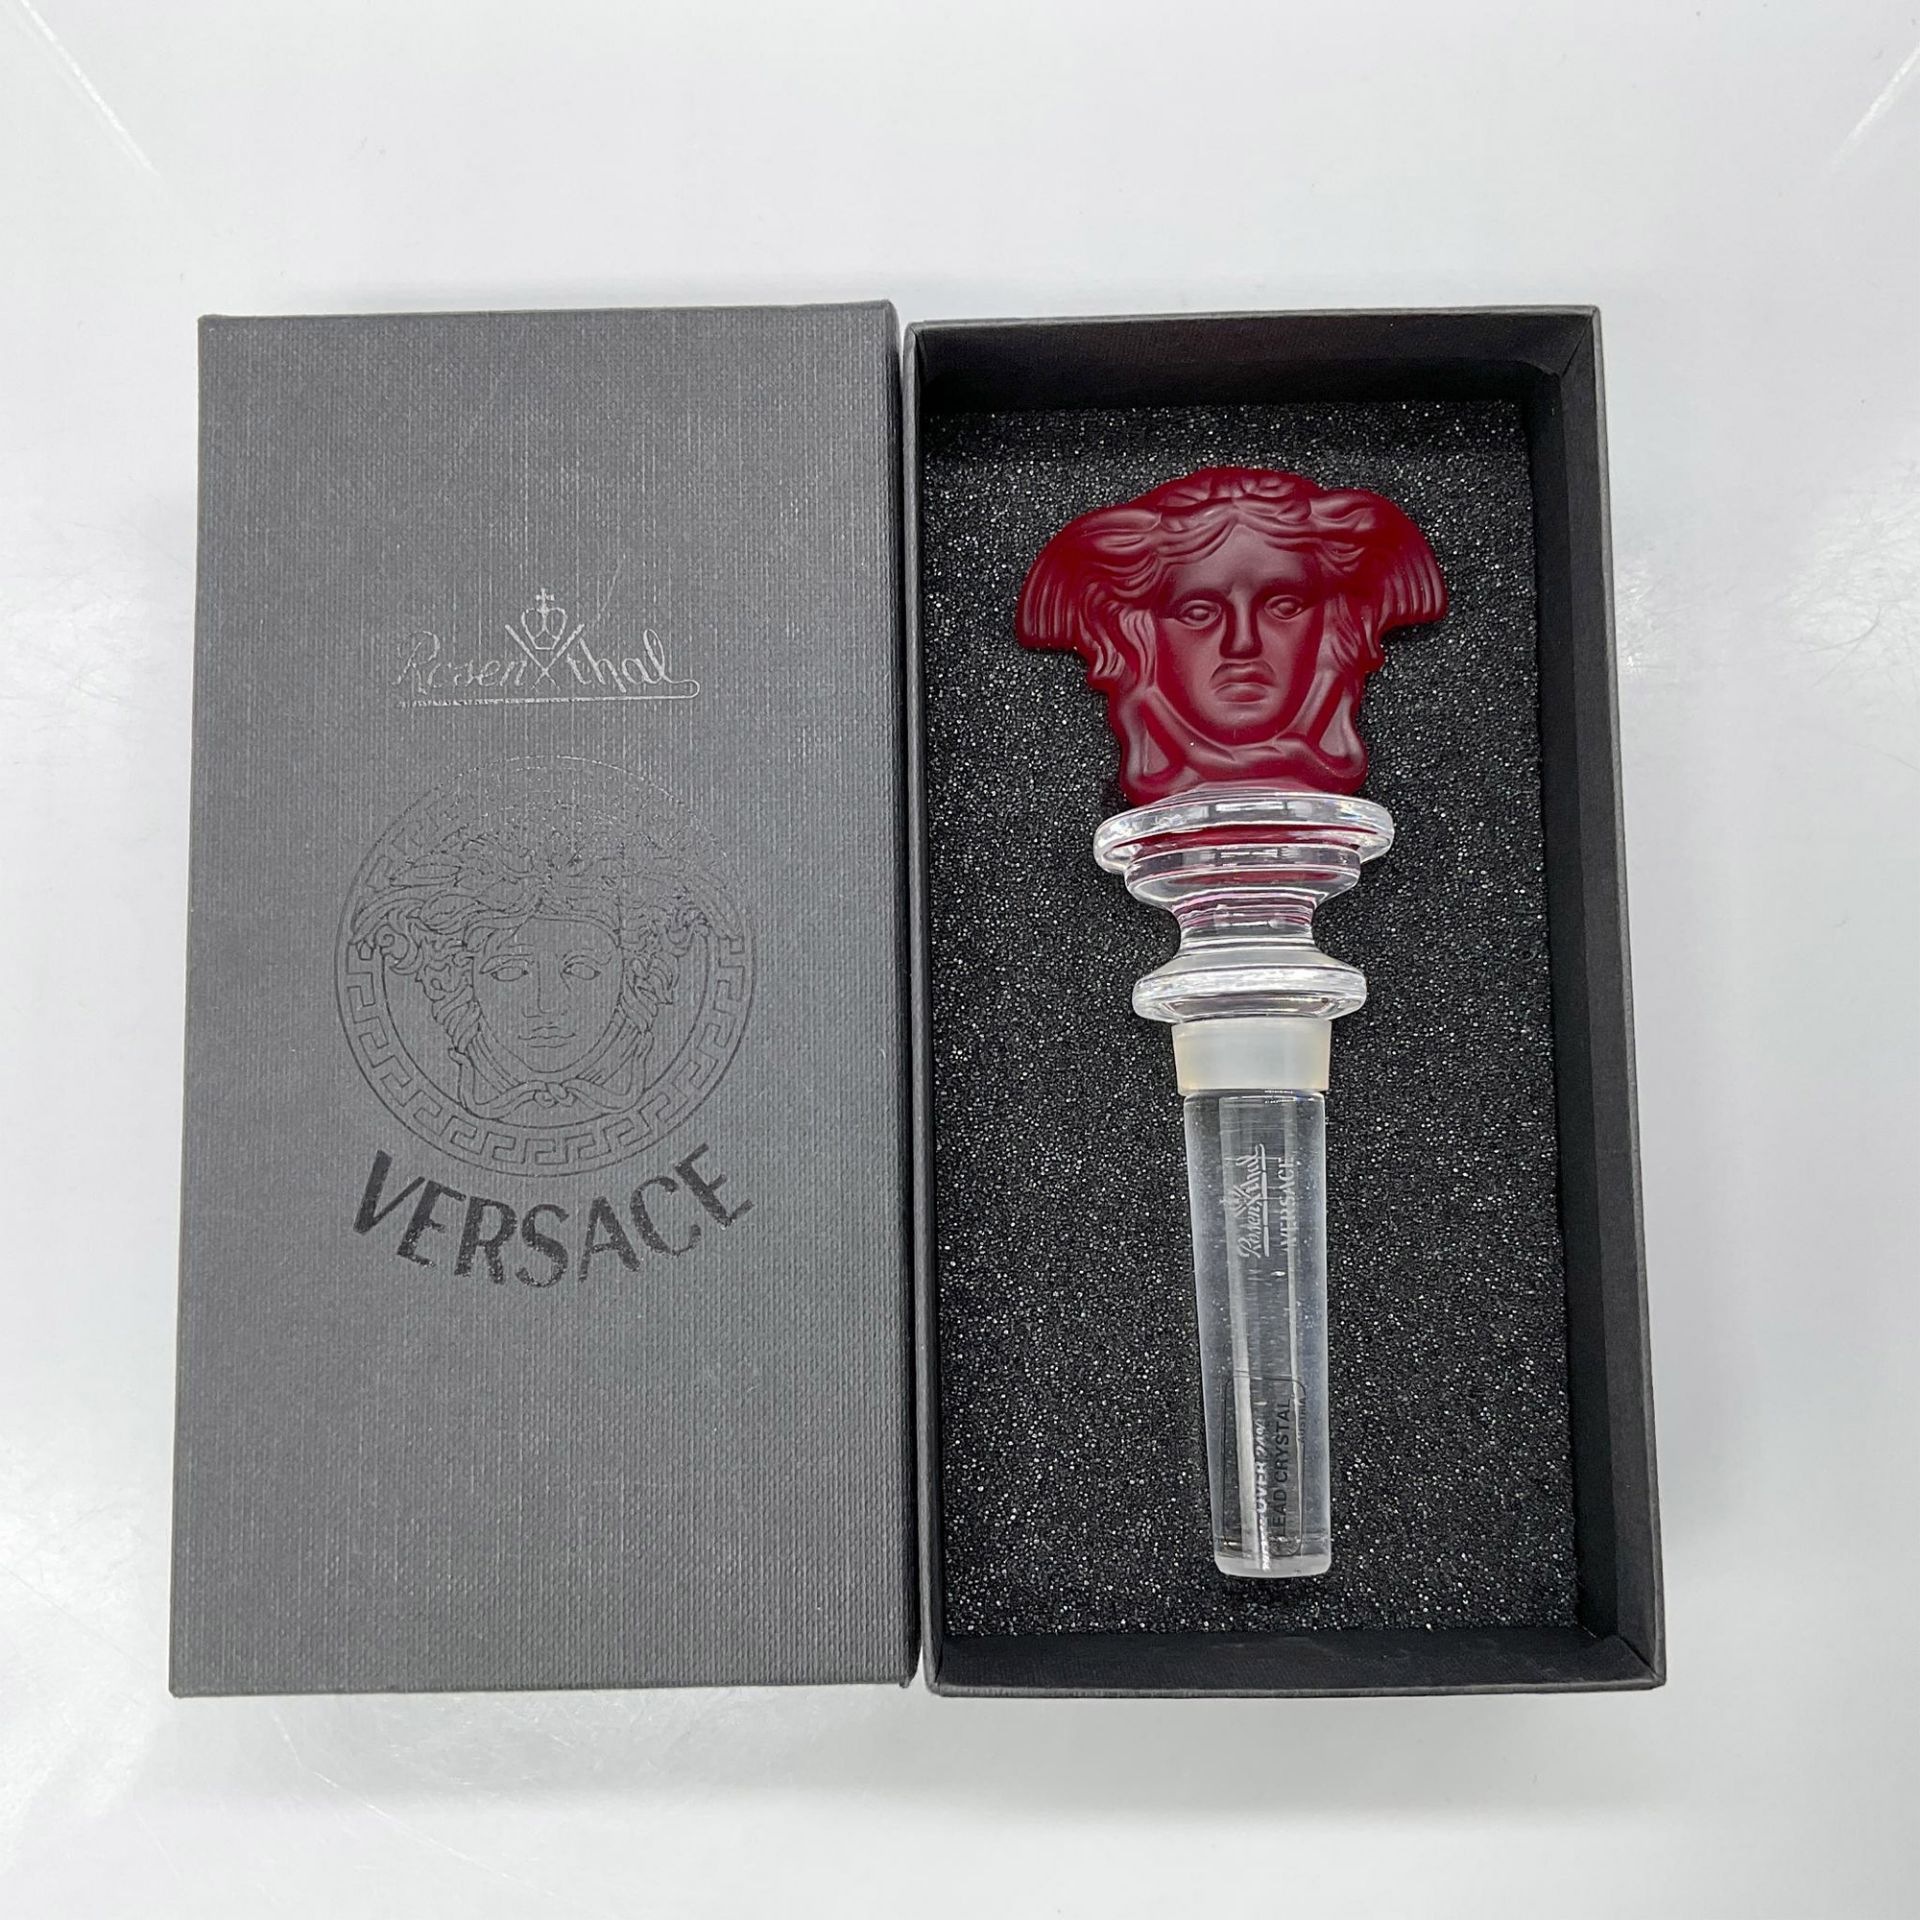 Rosenthal Versace Medusa Head Bottle Stopper, Red - Bild 3 aus 3